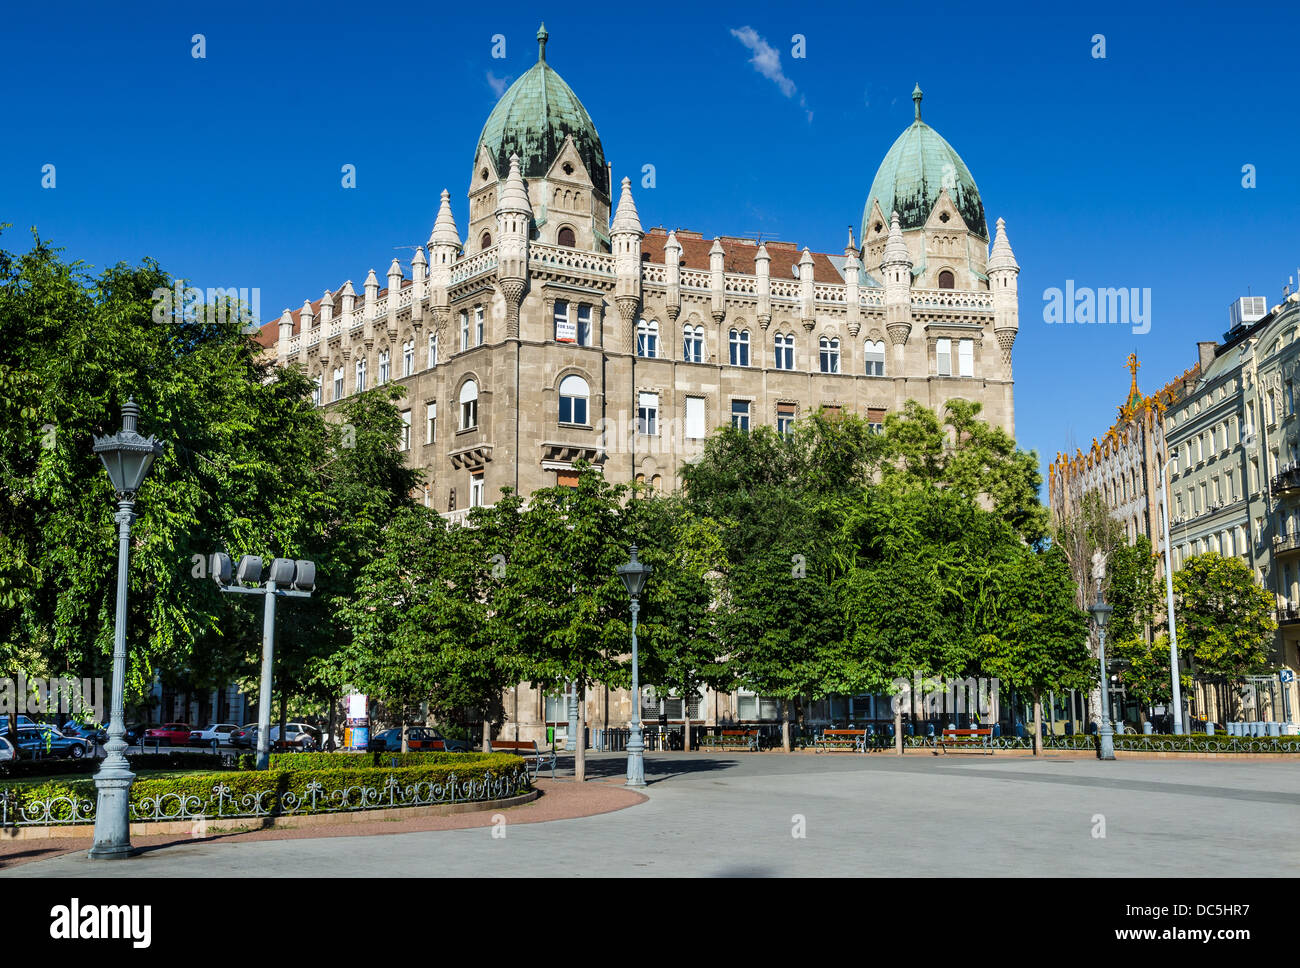 Place de la liberté (en hongrois Szabadsag ter) est une place publique située à Budapest, Hongrie. Banque D'Images